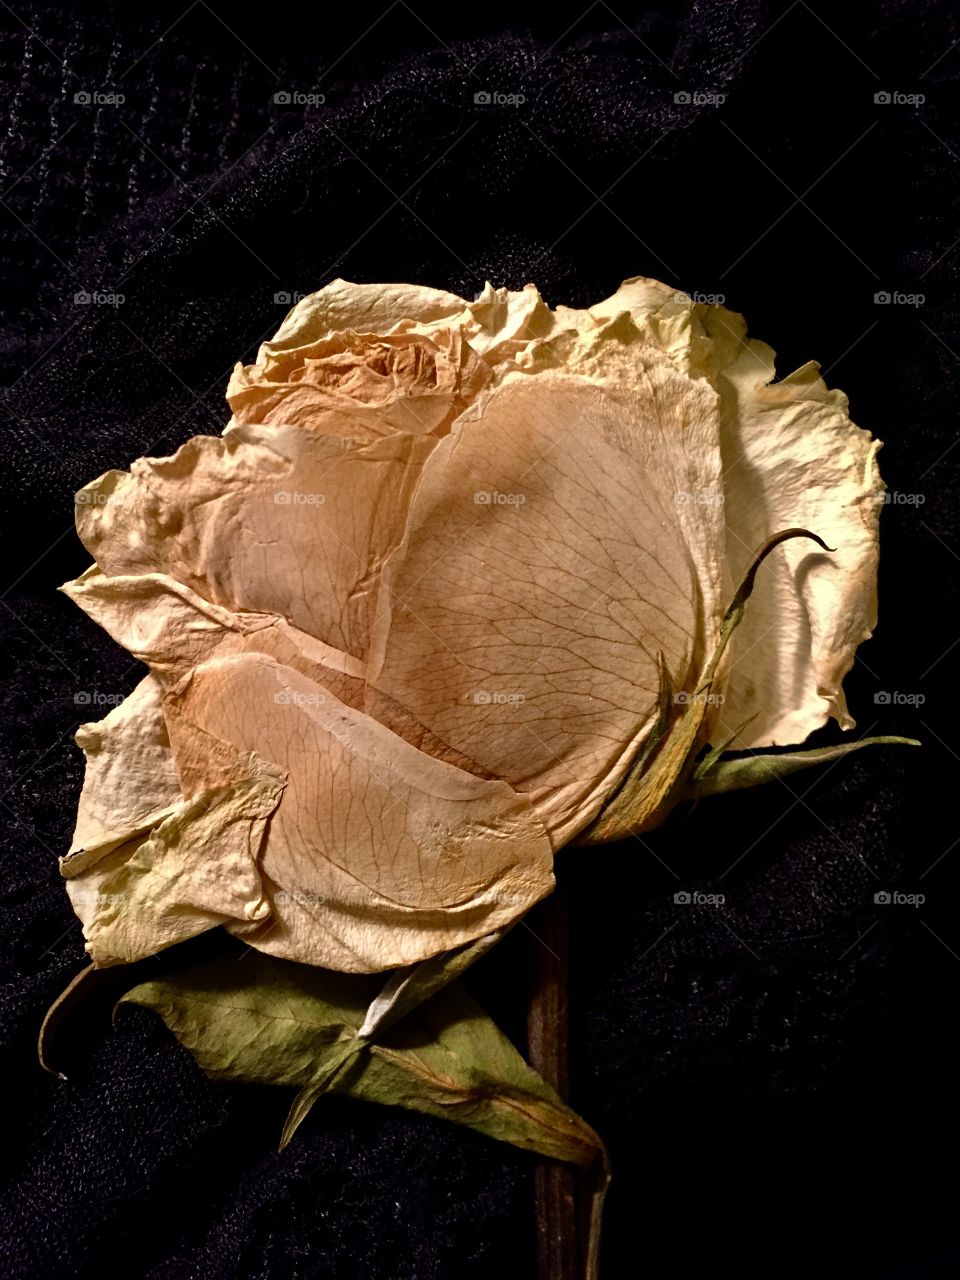 Pressed yellow memorial rose.